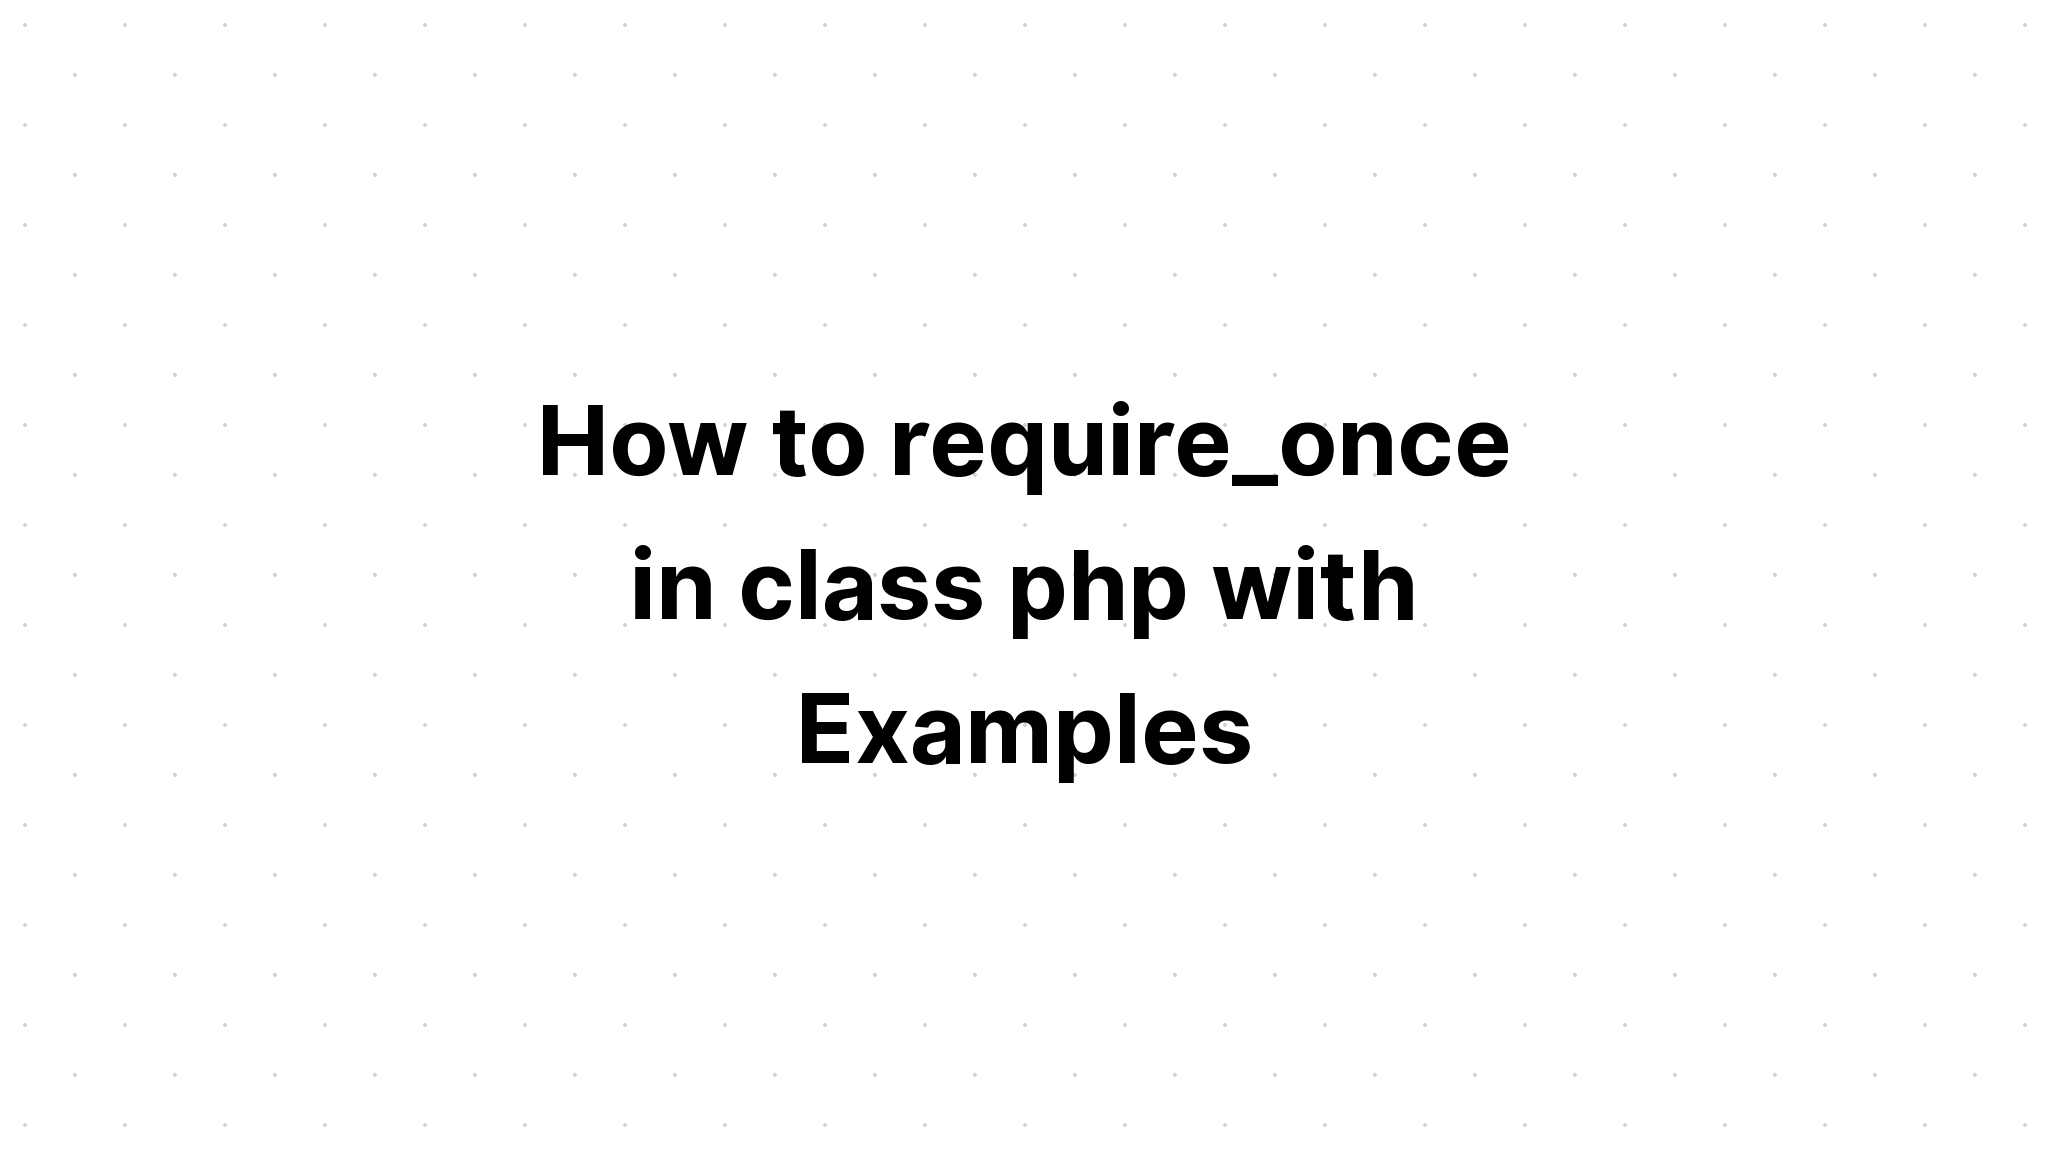 Cara require_once di kelas php dengan Contoh